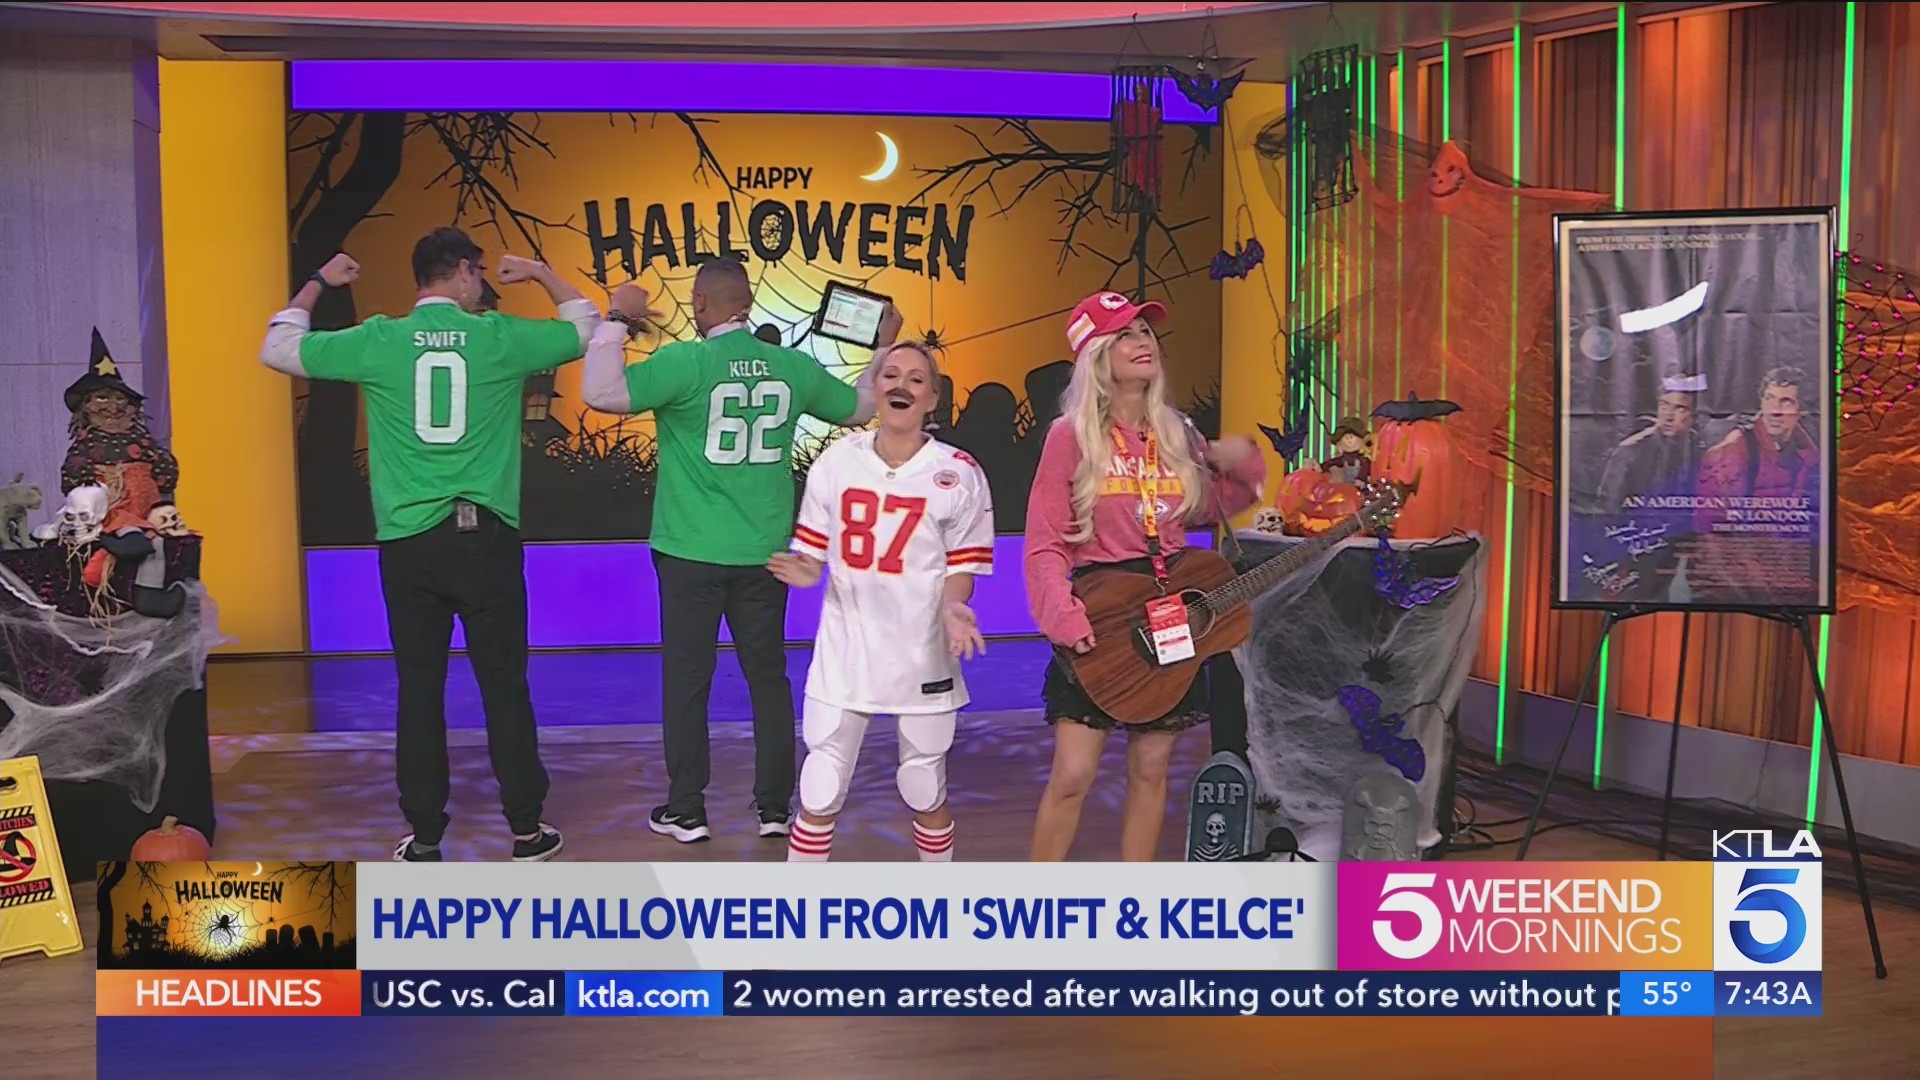 KTLA Weekenders celebrate Halloween with dueling takes on Swift and Kelce